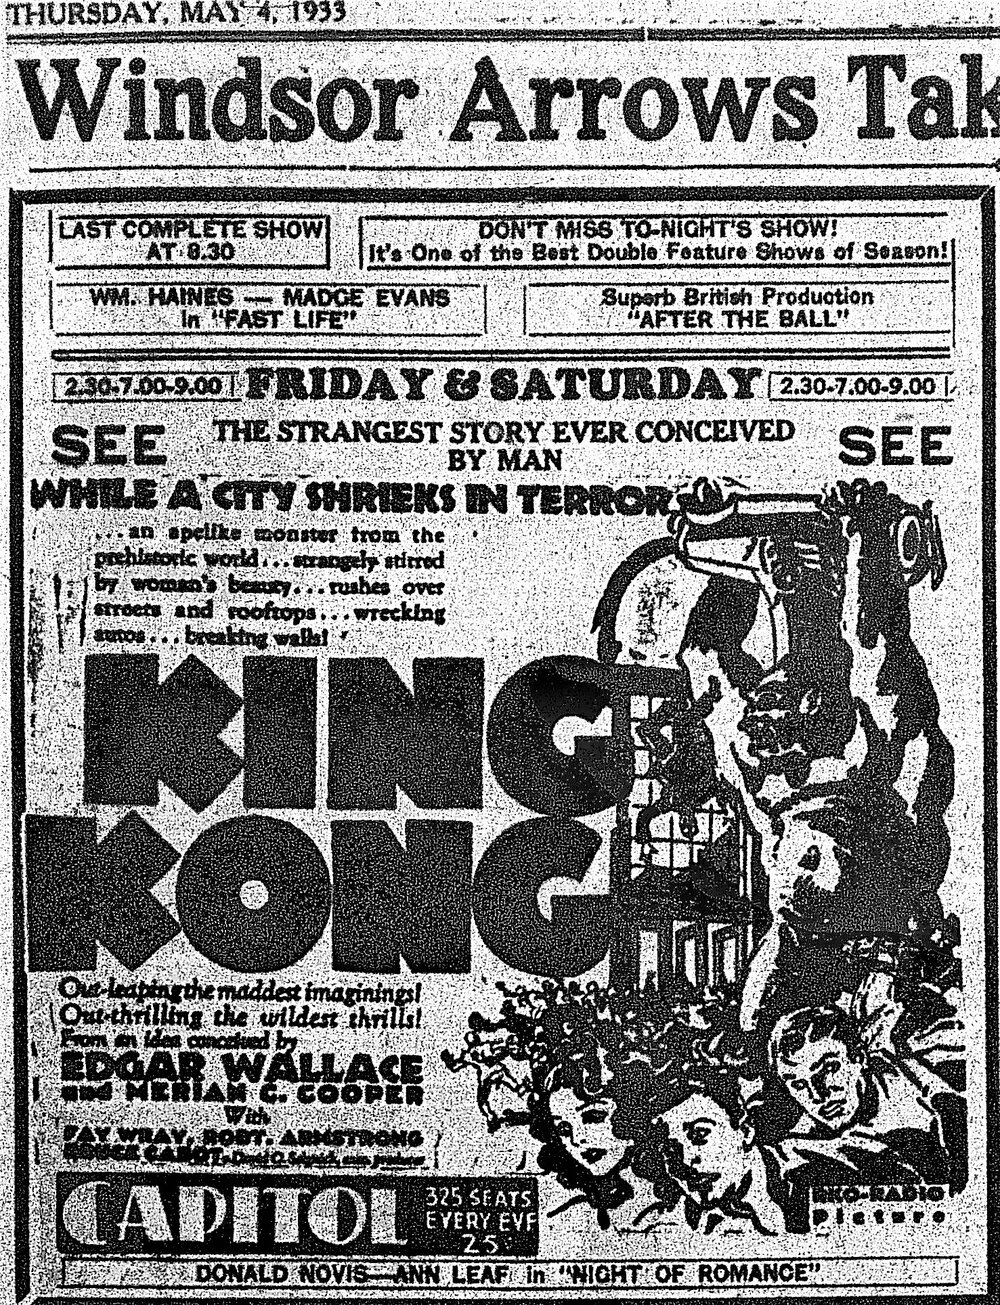 1933 May 4 p17 Capitol King Kong (3).JPG